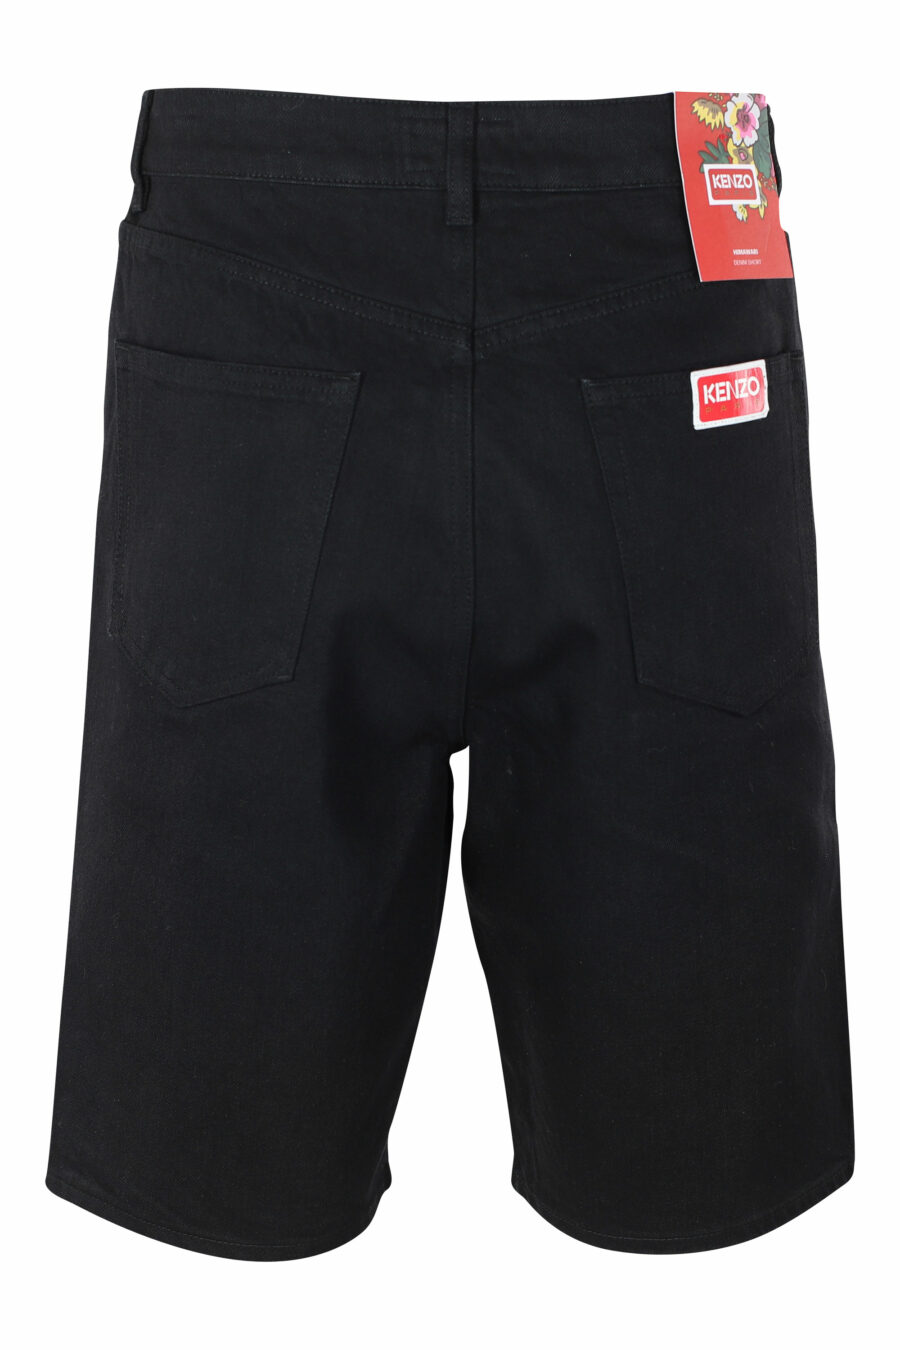 Pantalón vaquero negro corto con minilogo - IMG 9606